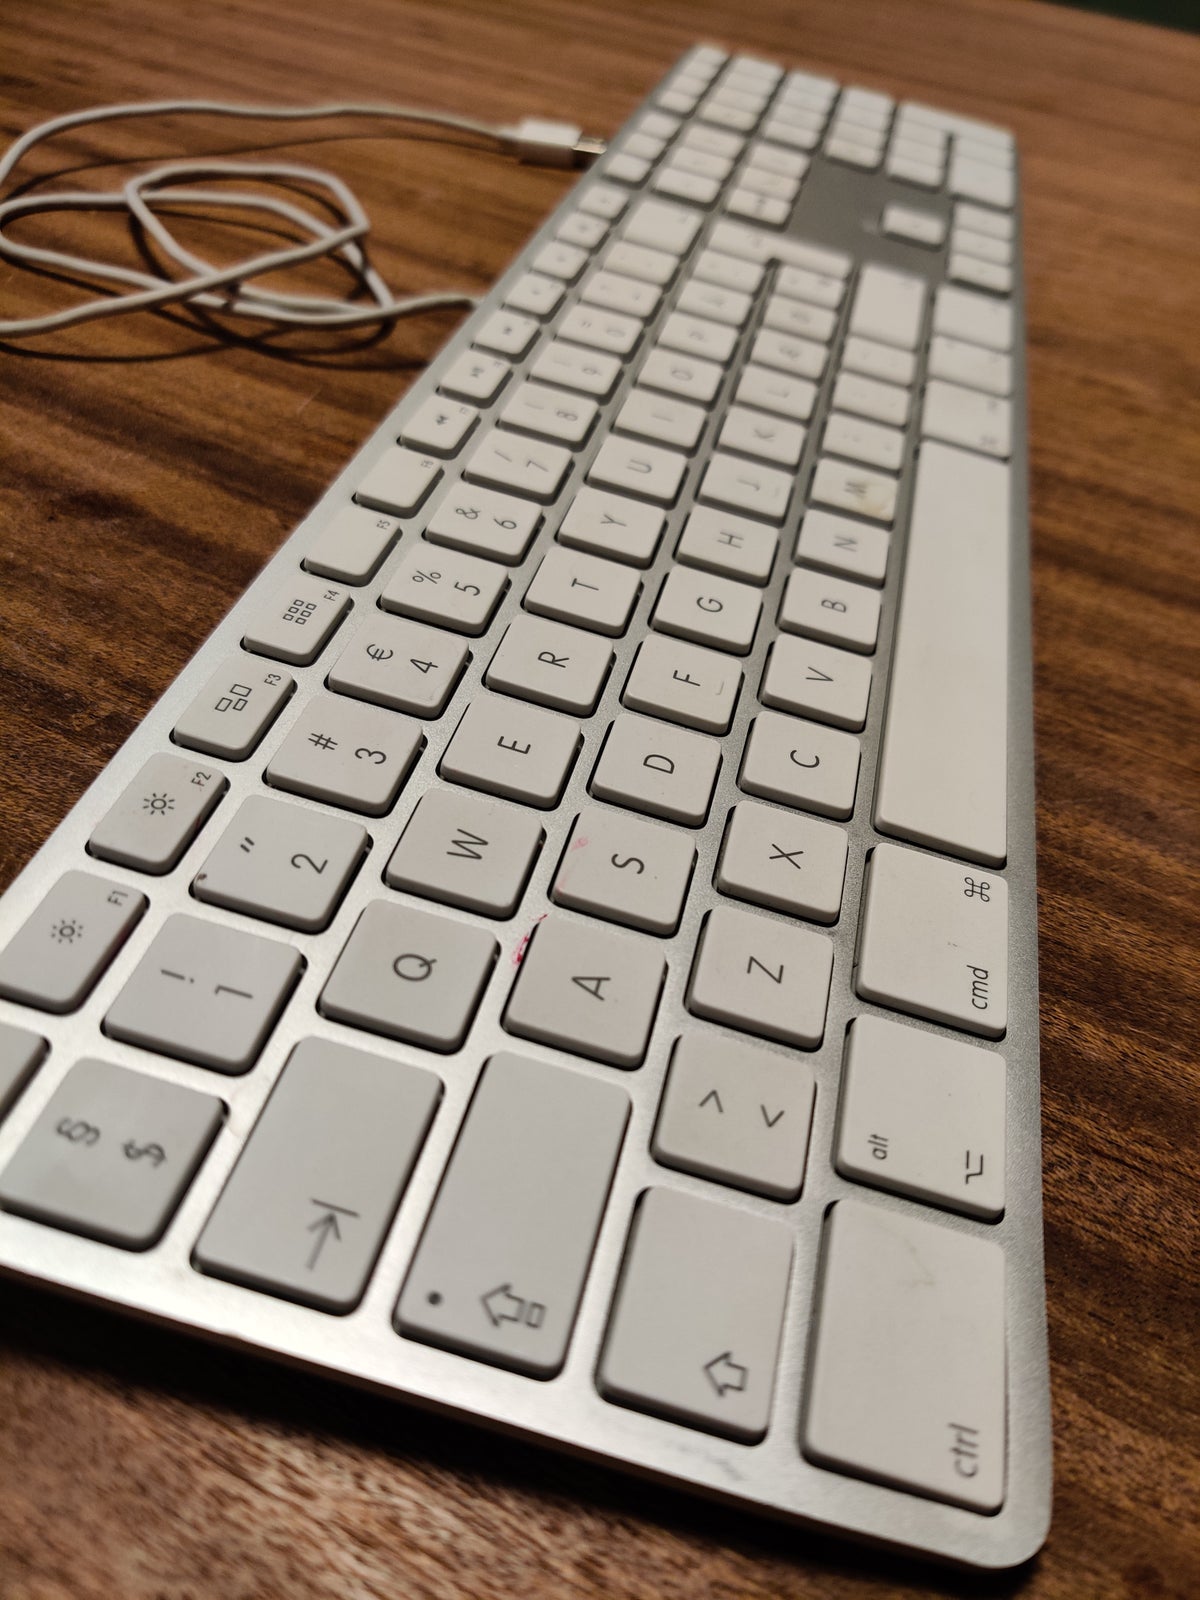 Tastatur, Apple, A1243